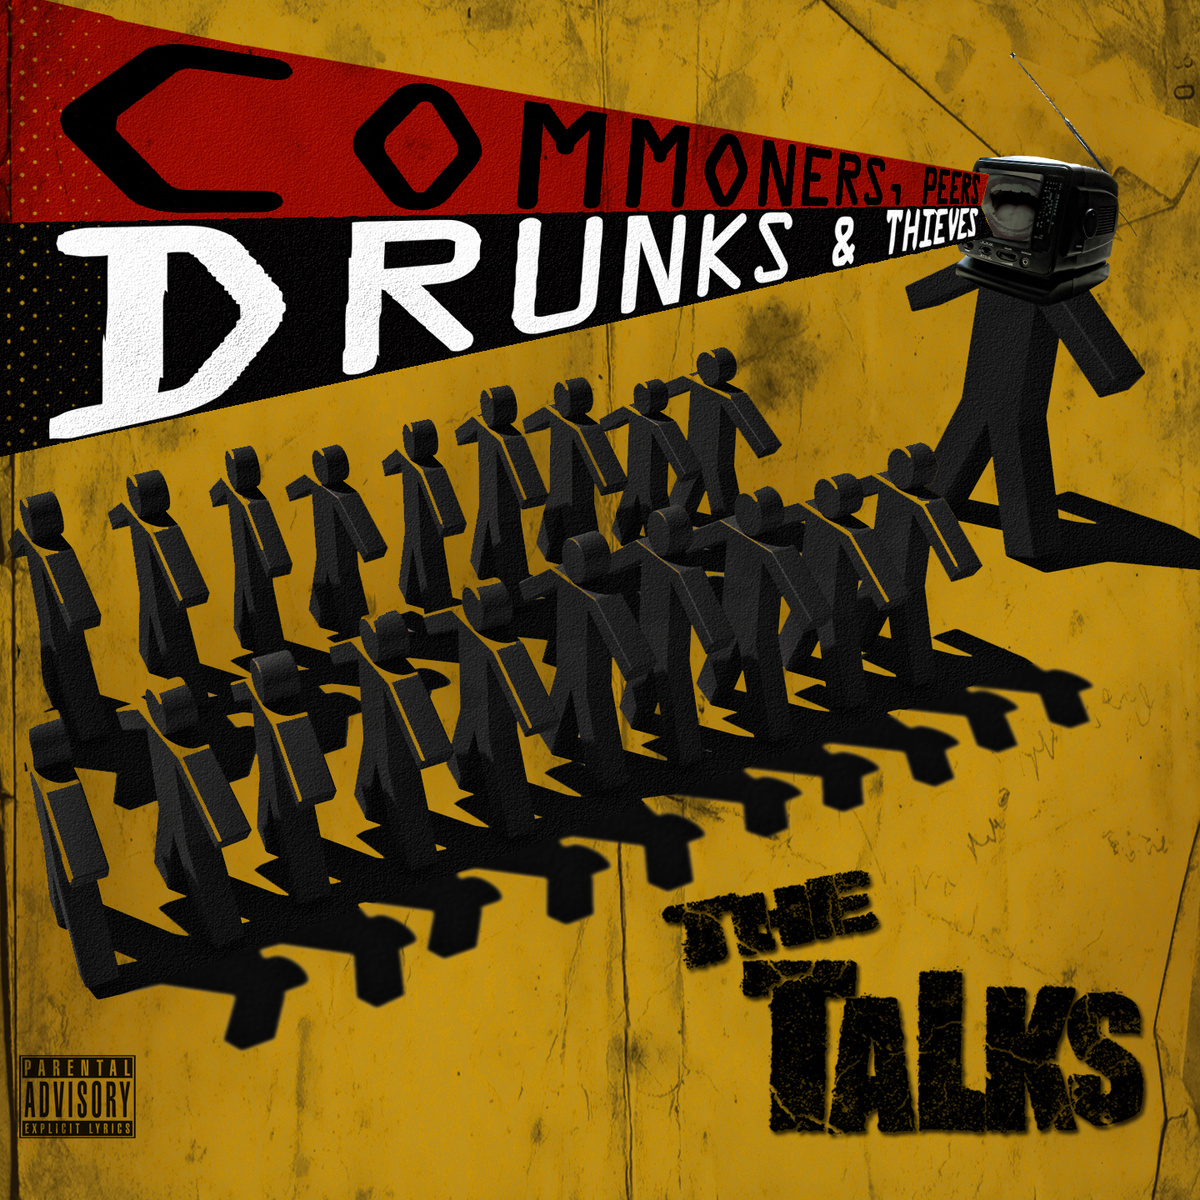 Talks, The/COMMONERS, PEERS, DRUNKS LP